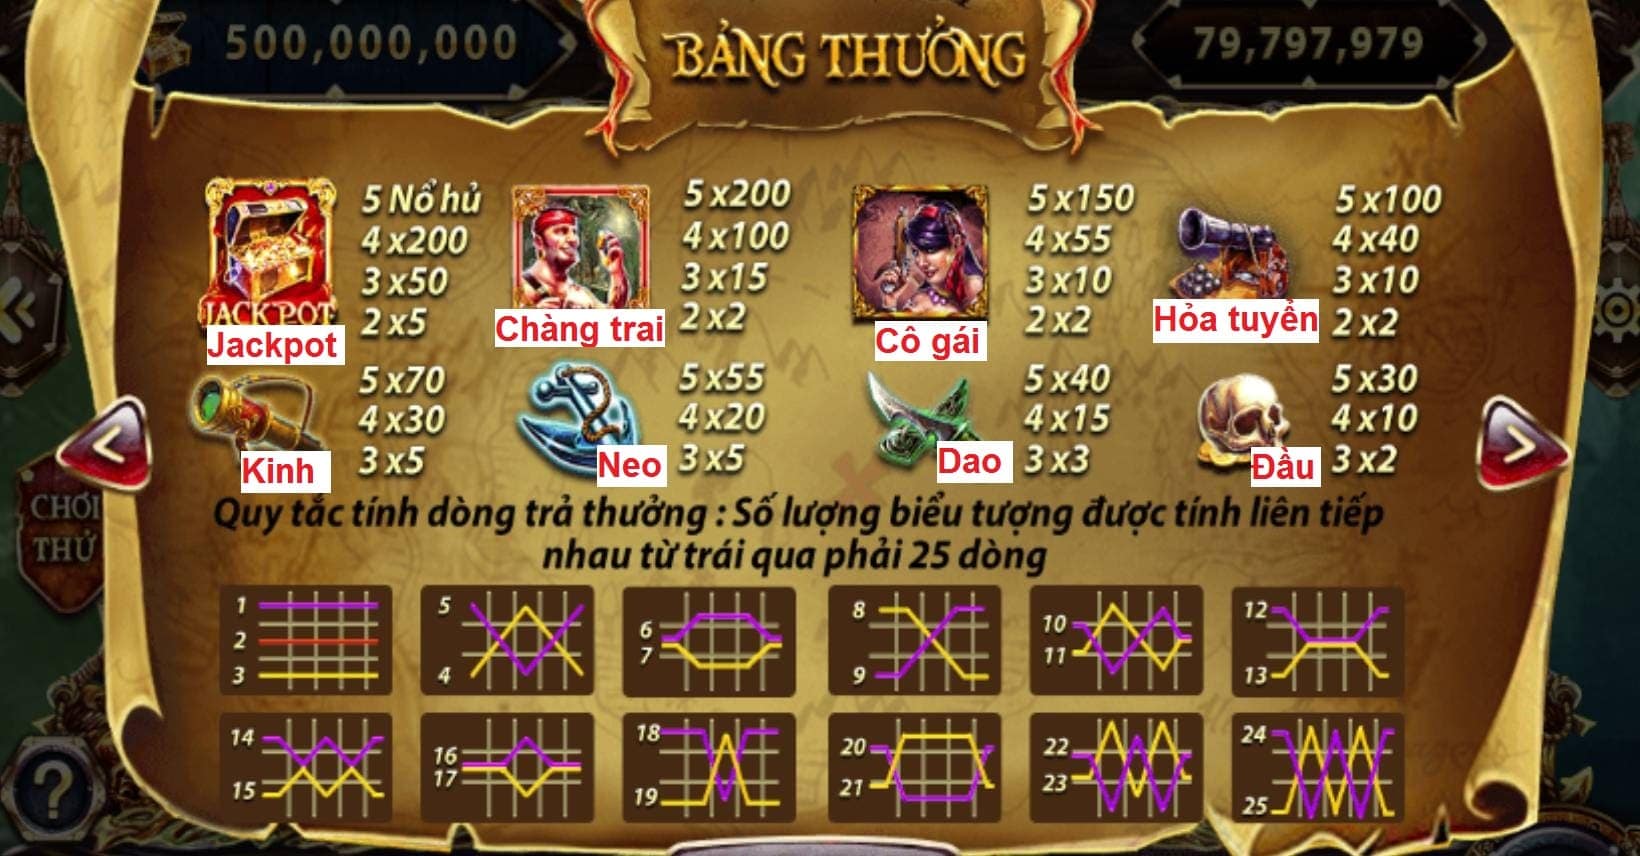 Giai ma game no hu Pirate King Sunwin an hu 74 000 000